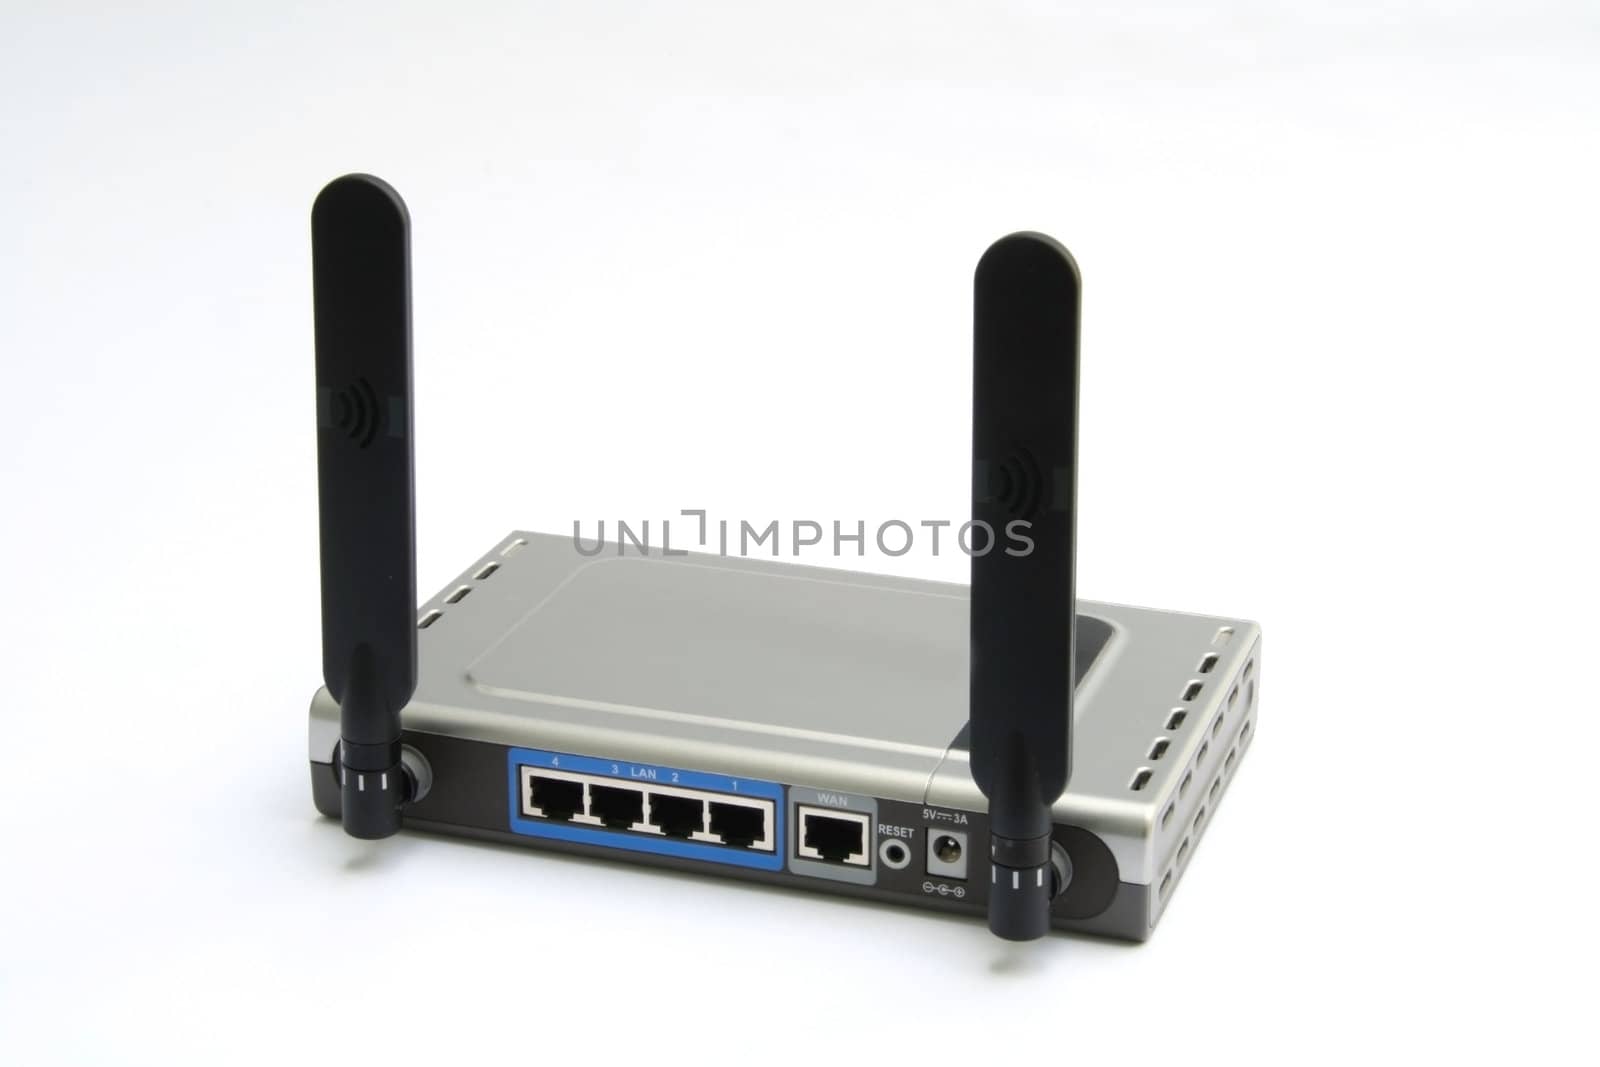 wireless modem & router - back by jonasbsl